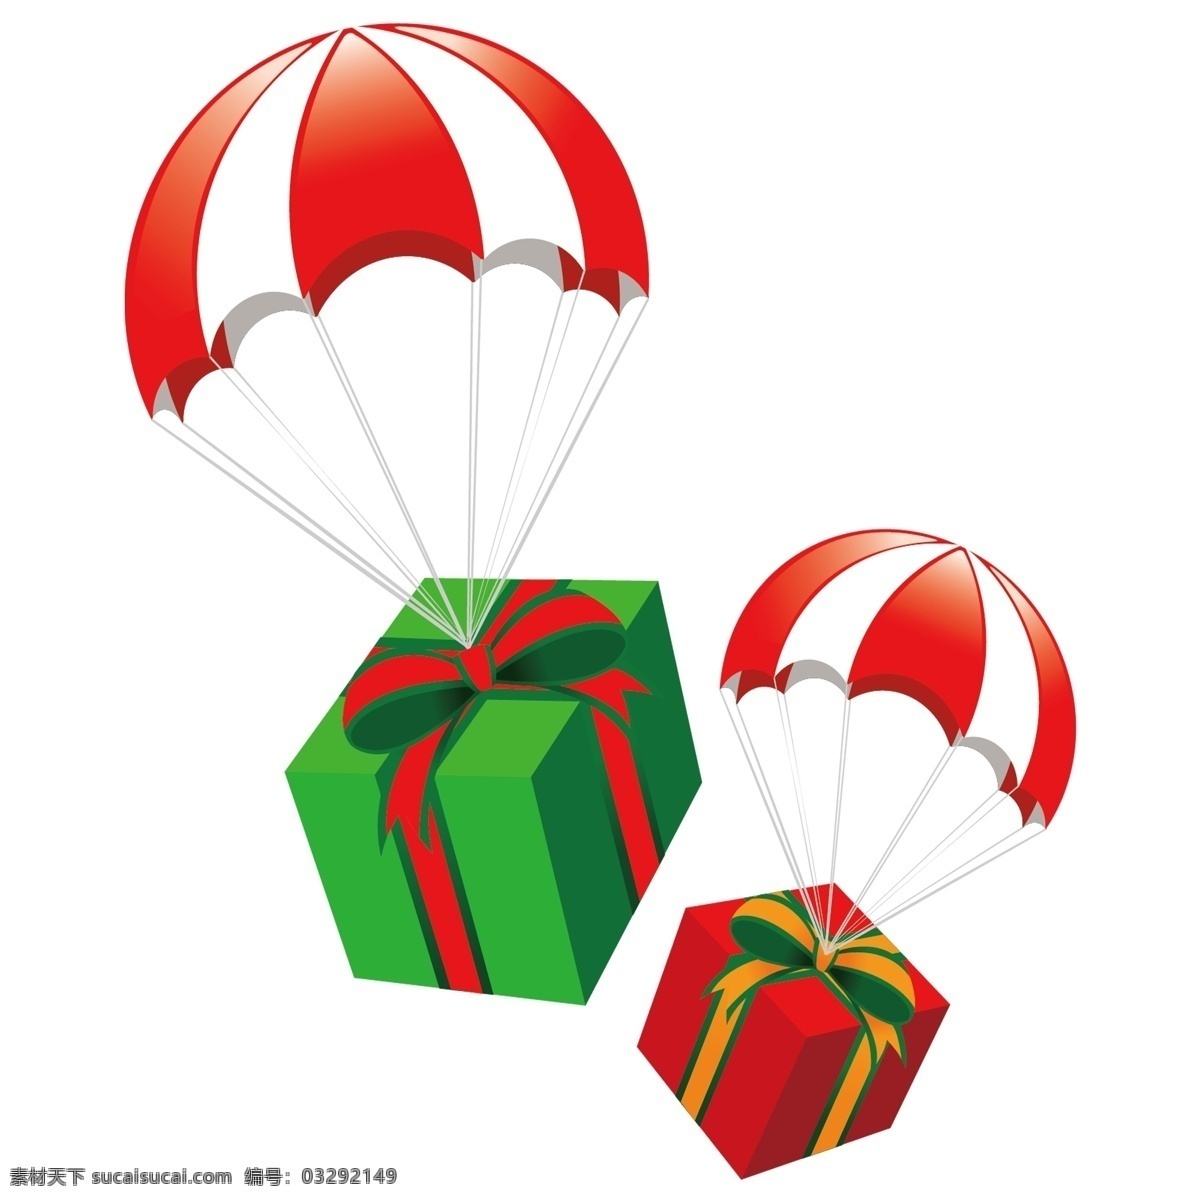 卡通 降落 礼物 盒 红白 降落伞 礼物盒 装饰素材